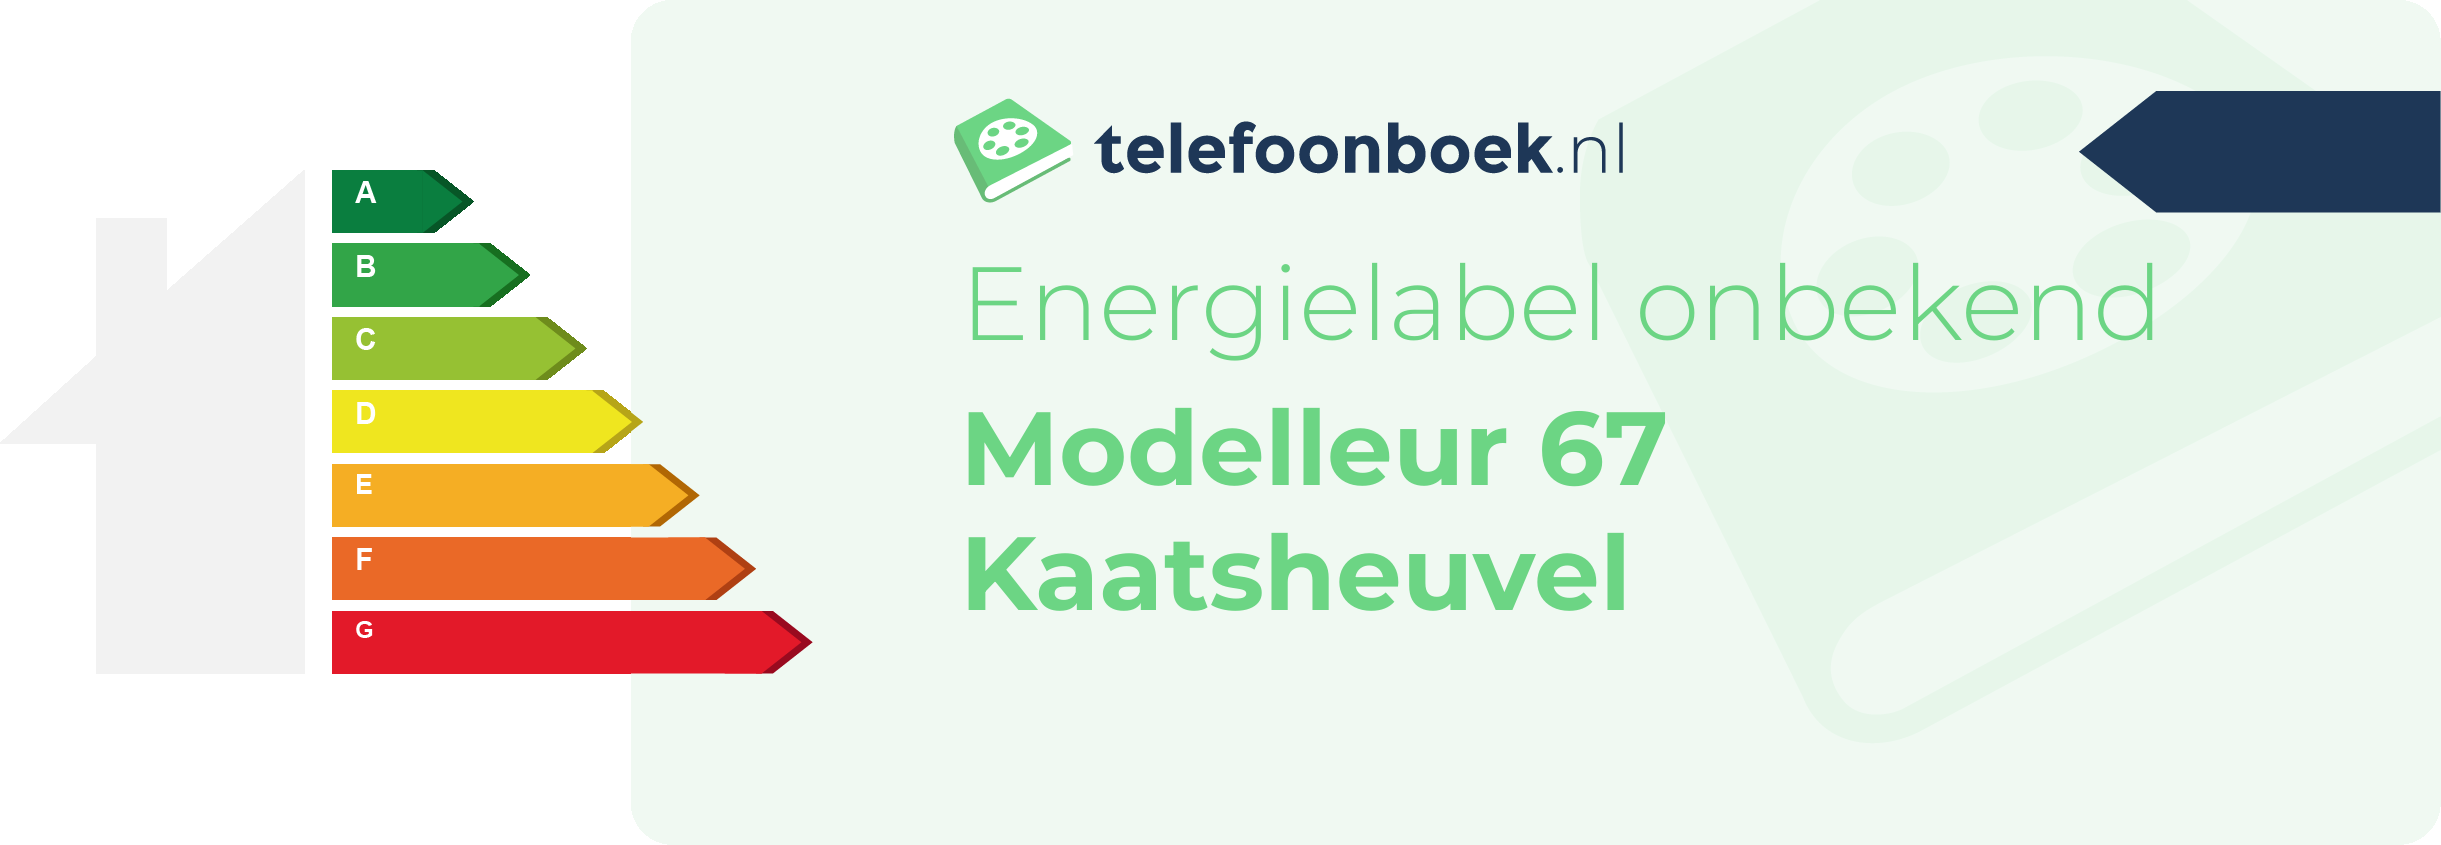 Energielabel Modelleur 67 Kaatsheuvel